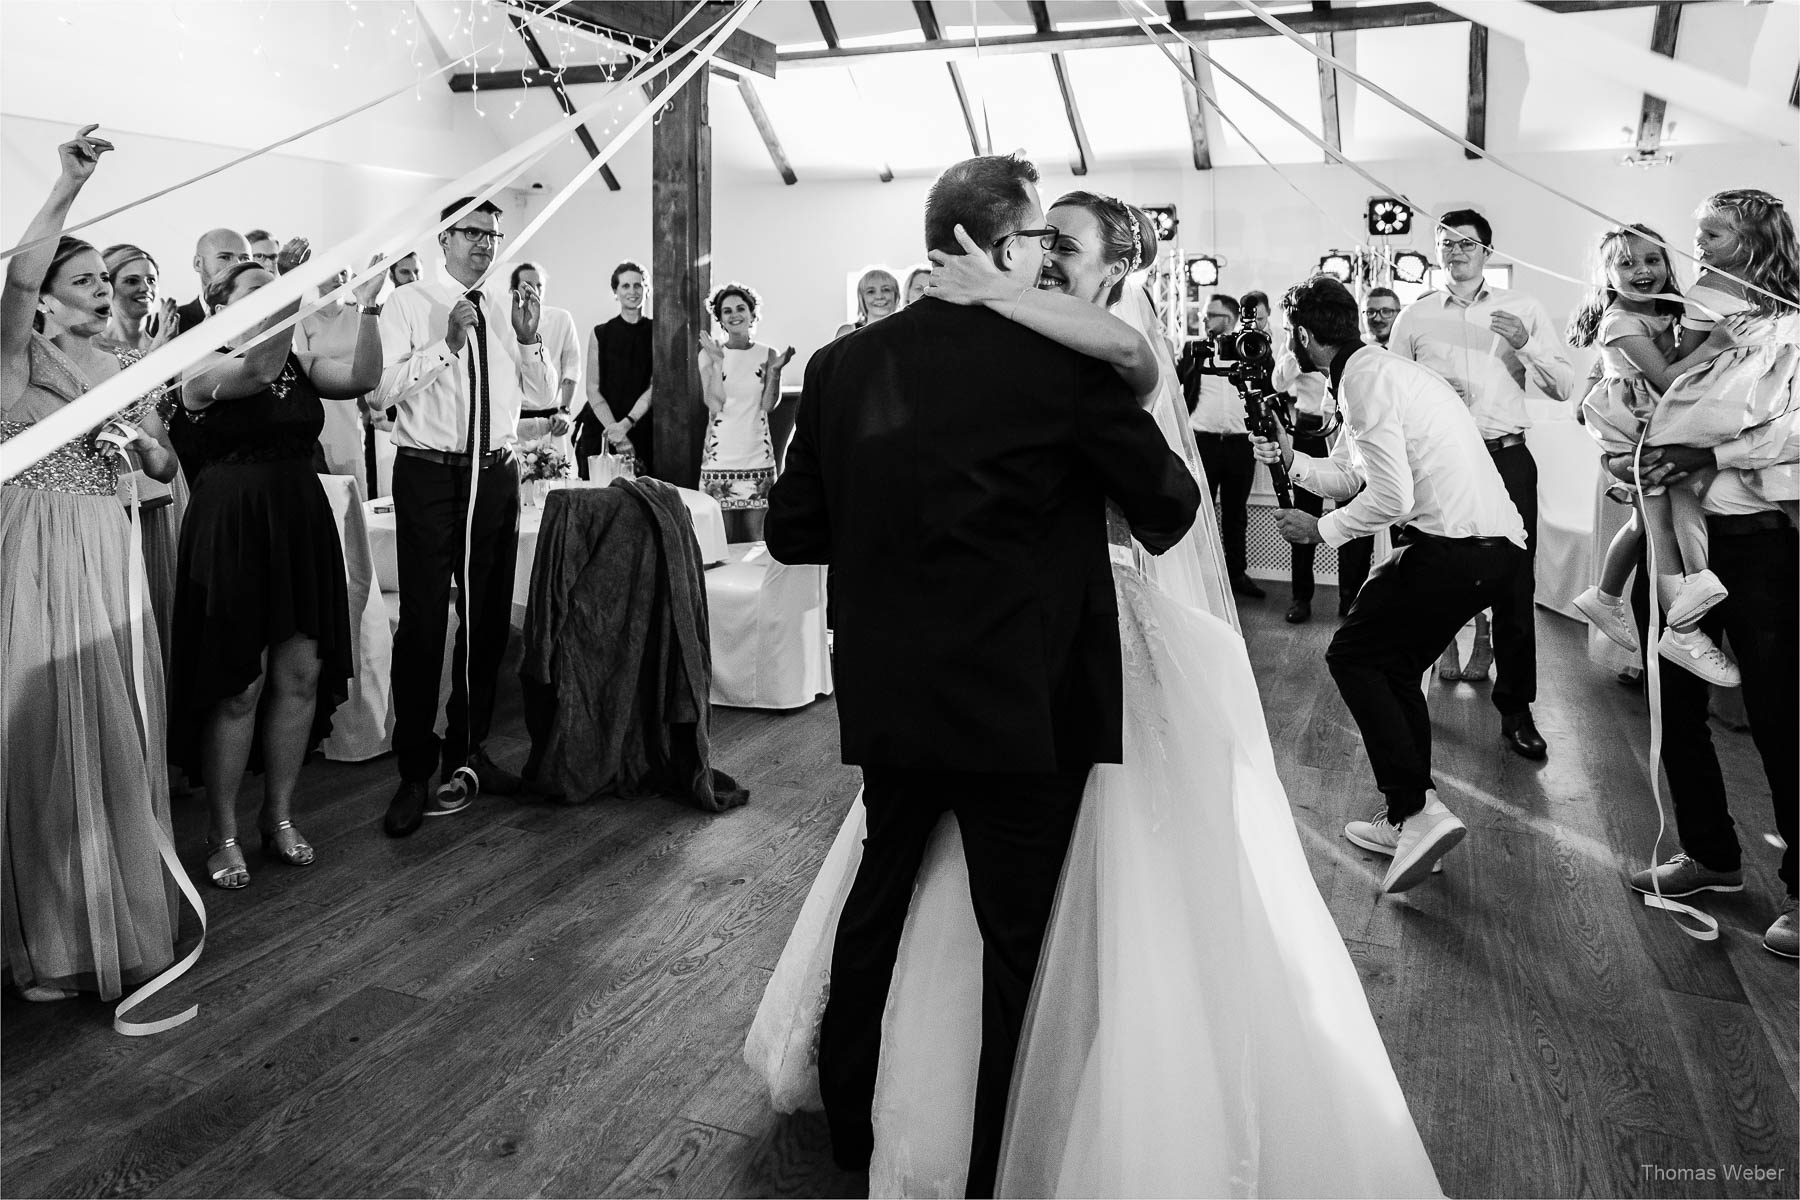 Tanz und Party auf der Hochzeitsfeier, Kirchliche Hochzeit in Rastede und Hochzeitsfeier in der Scheune St. Georg Rastede, Hochzeitsfotograf Thomas Weber aus Oldenburg